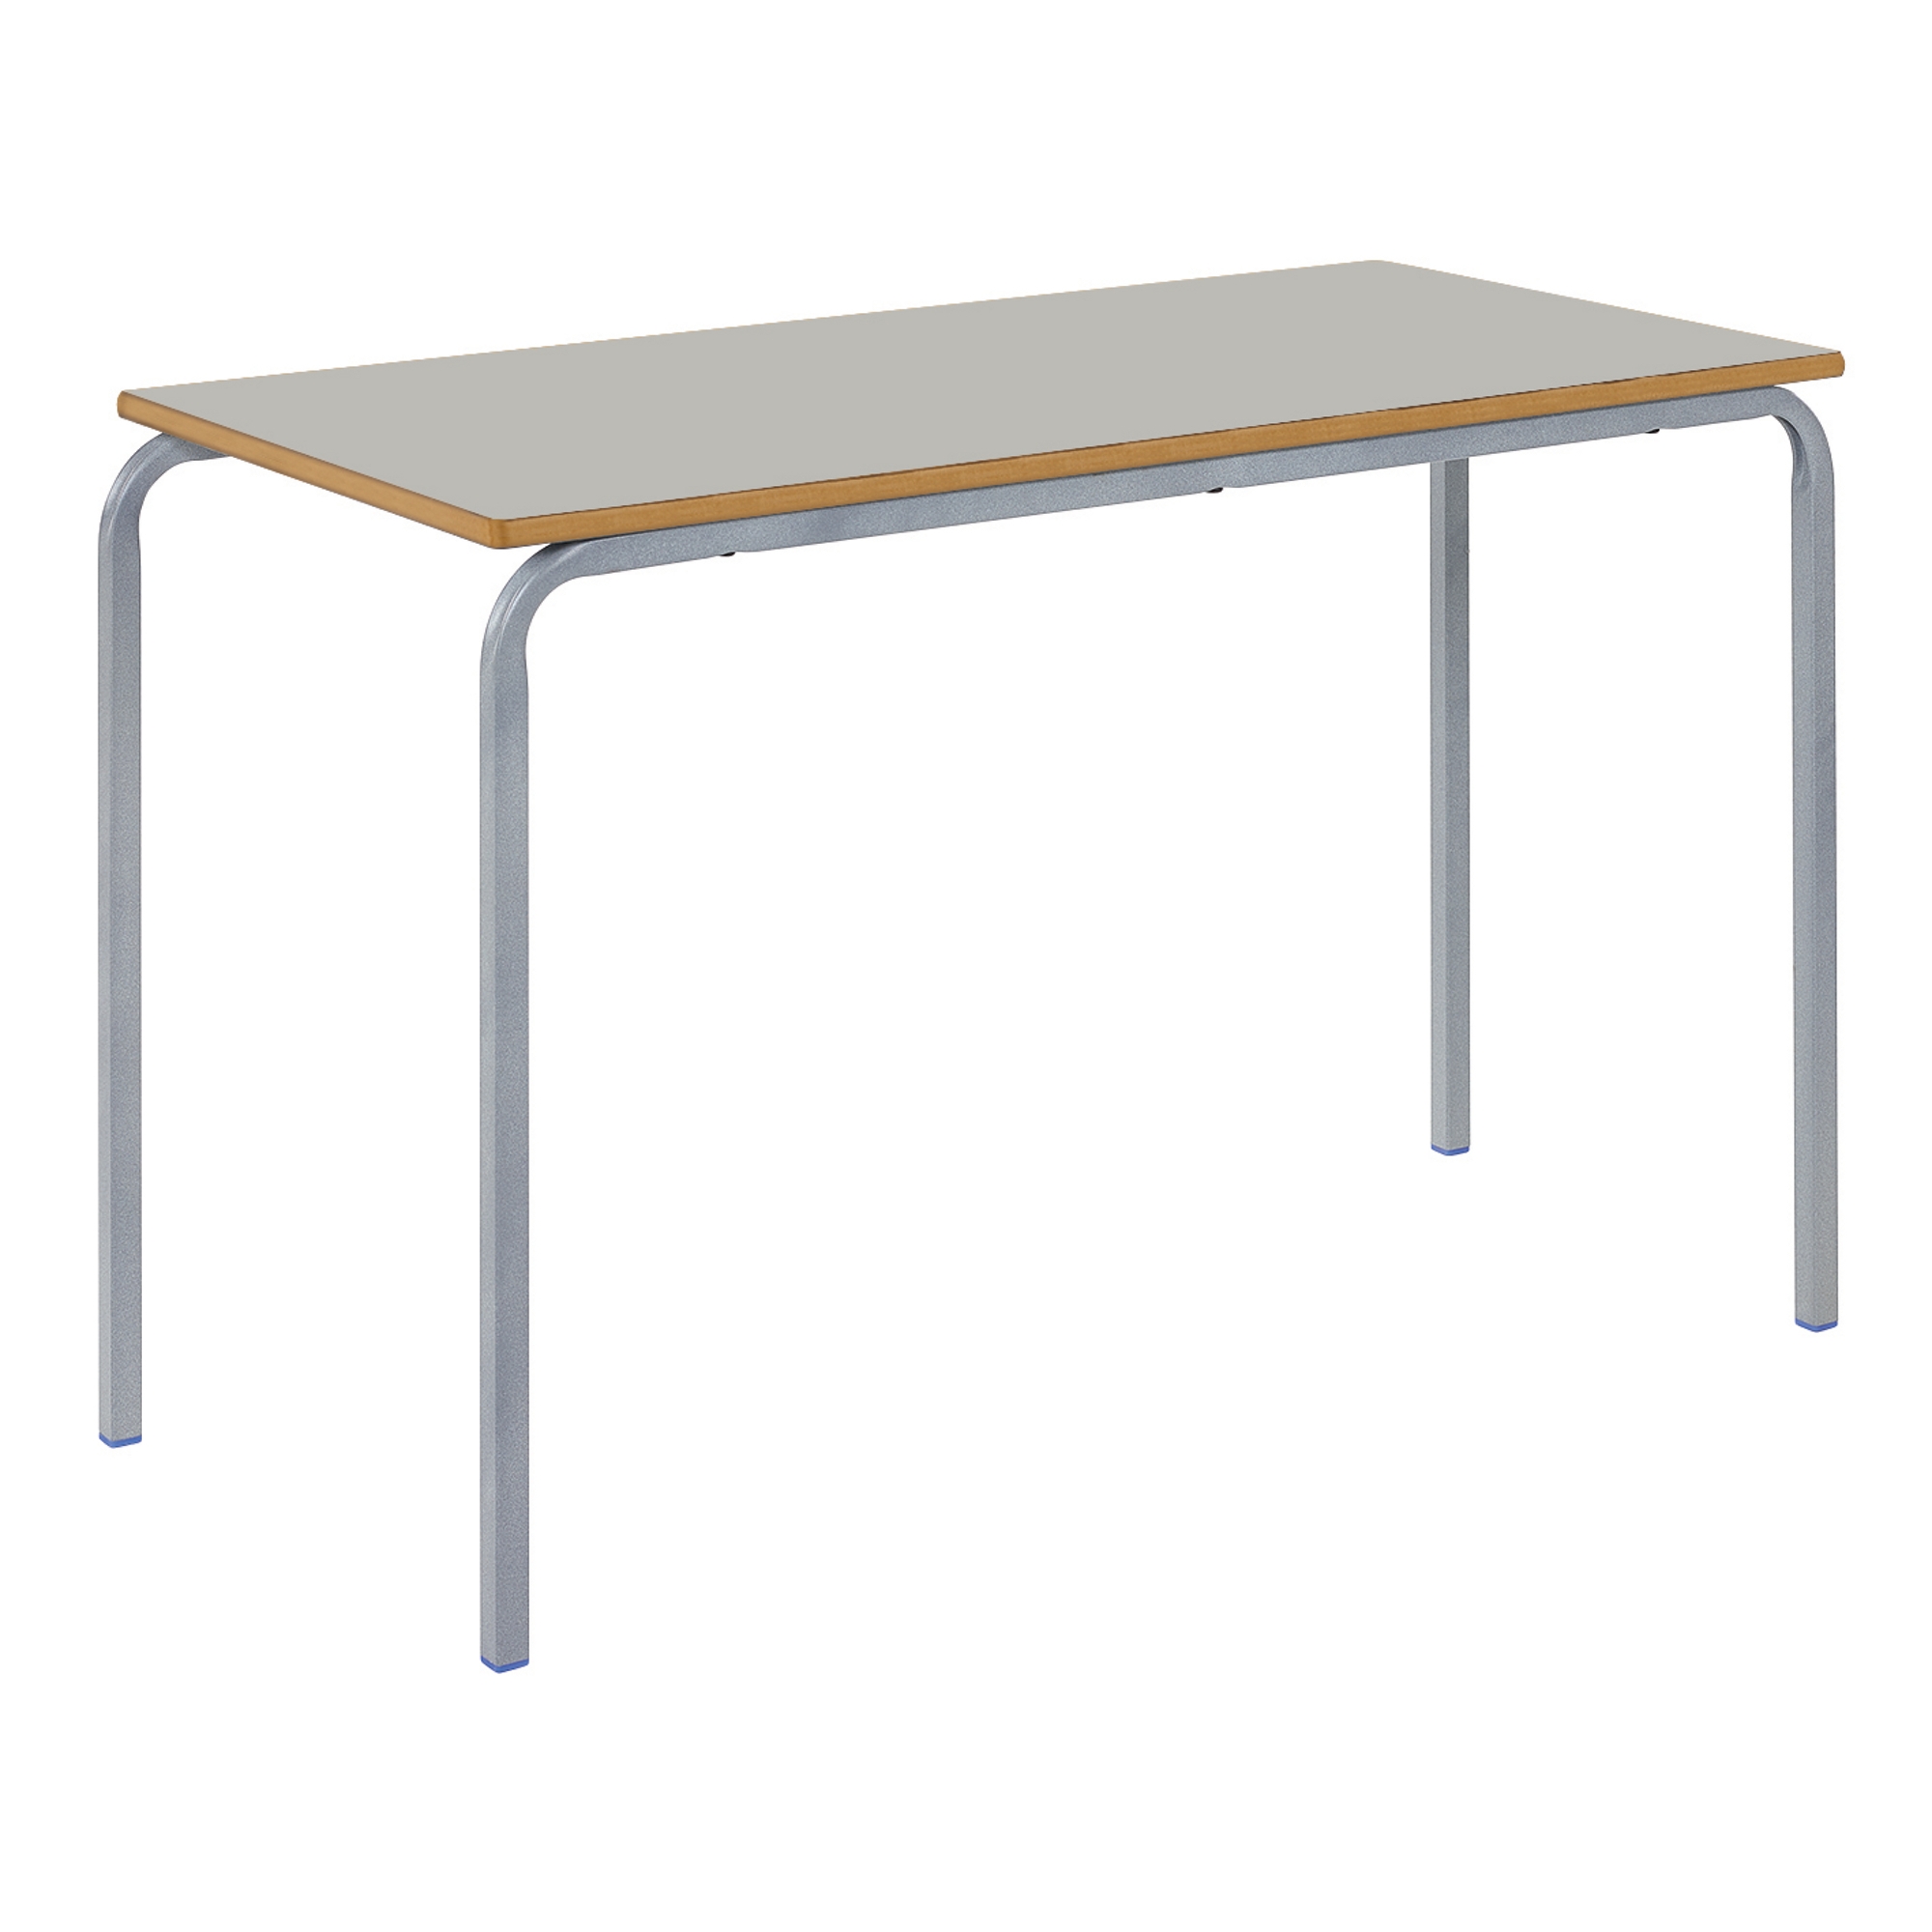 Classmates Rectangular Crushed Bent Classroom Table - 1100 x 550 x 590mm - Grey